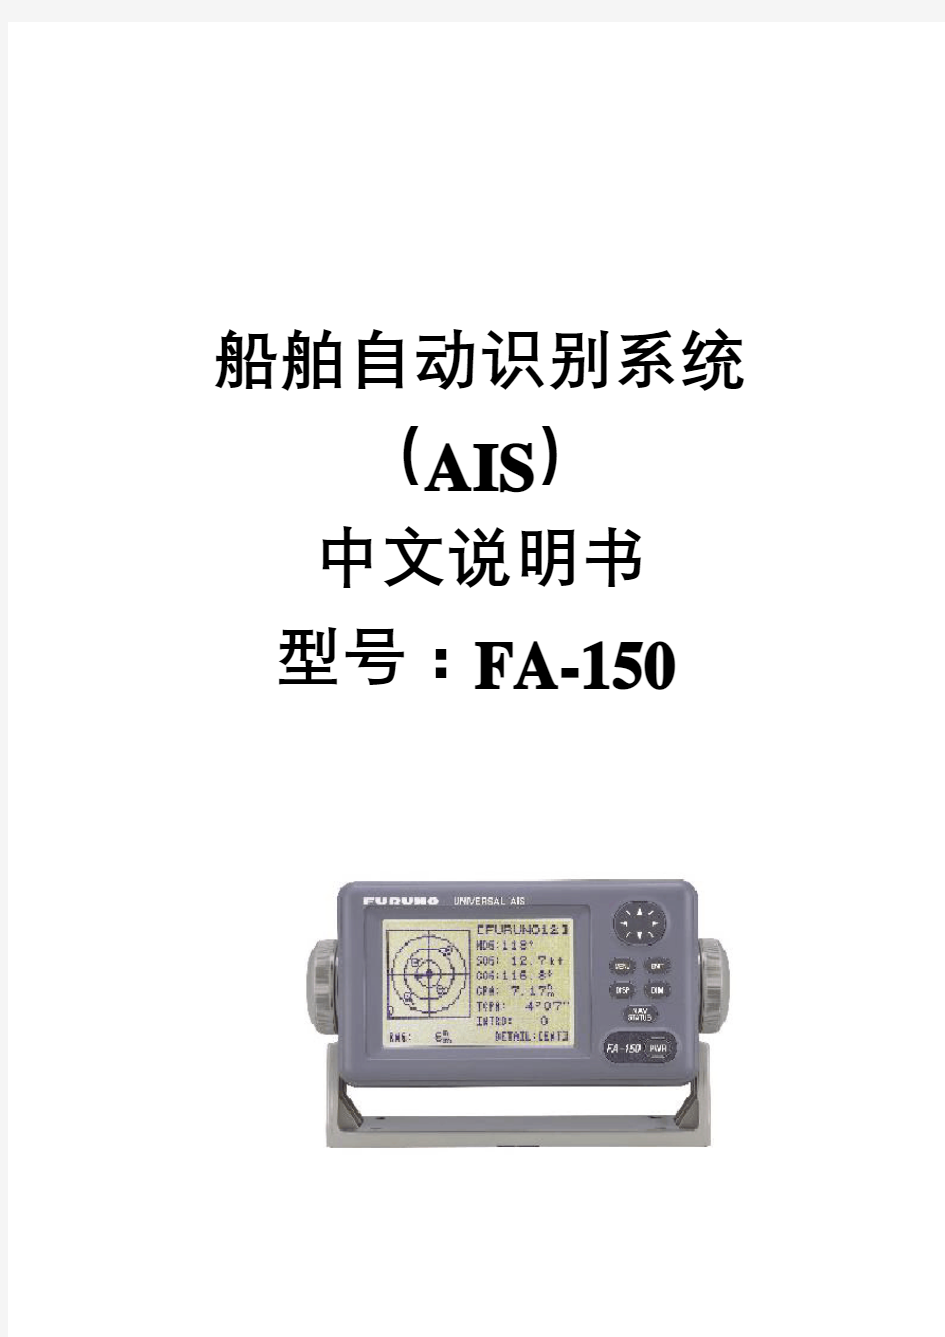 中文说明书船舶自动识别系统AISFA